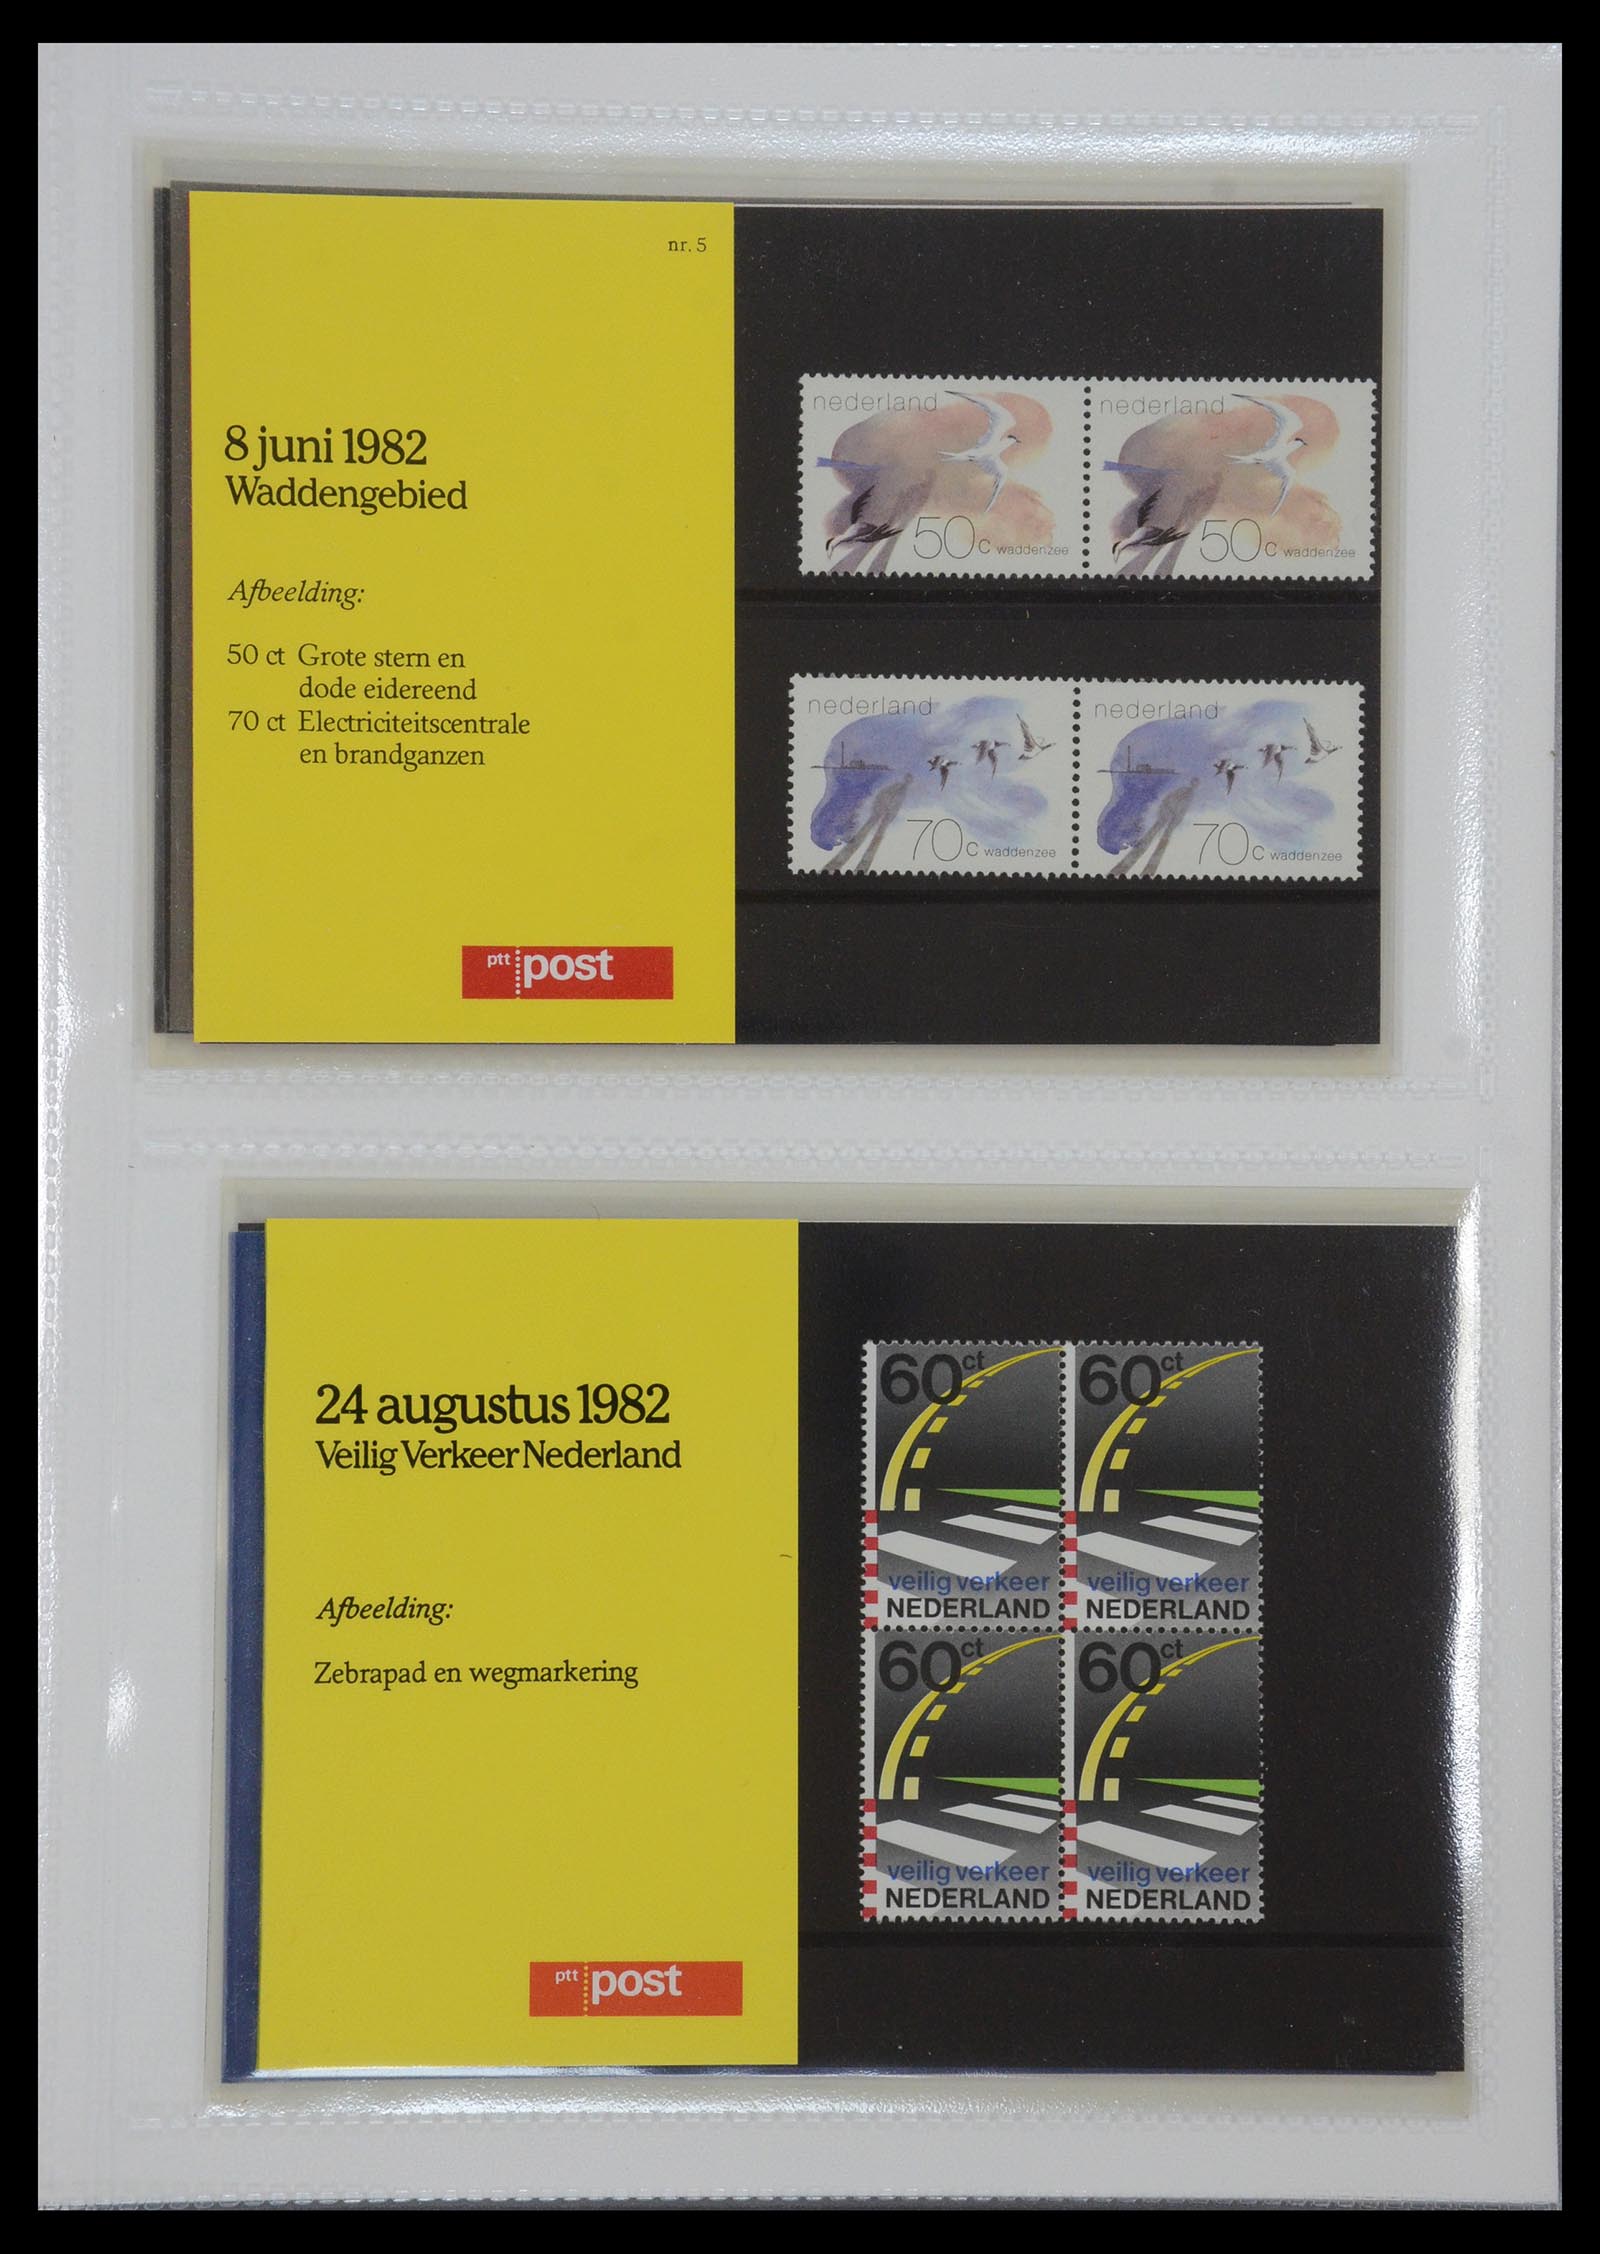 35144 003 - Stamp Collection 35144 Netherlands PTT presentation packs 1982-2021!